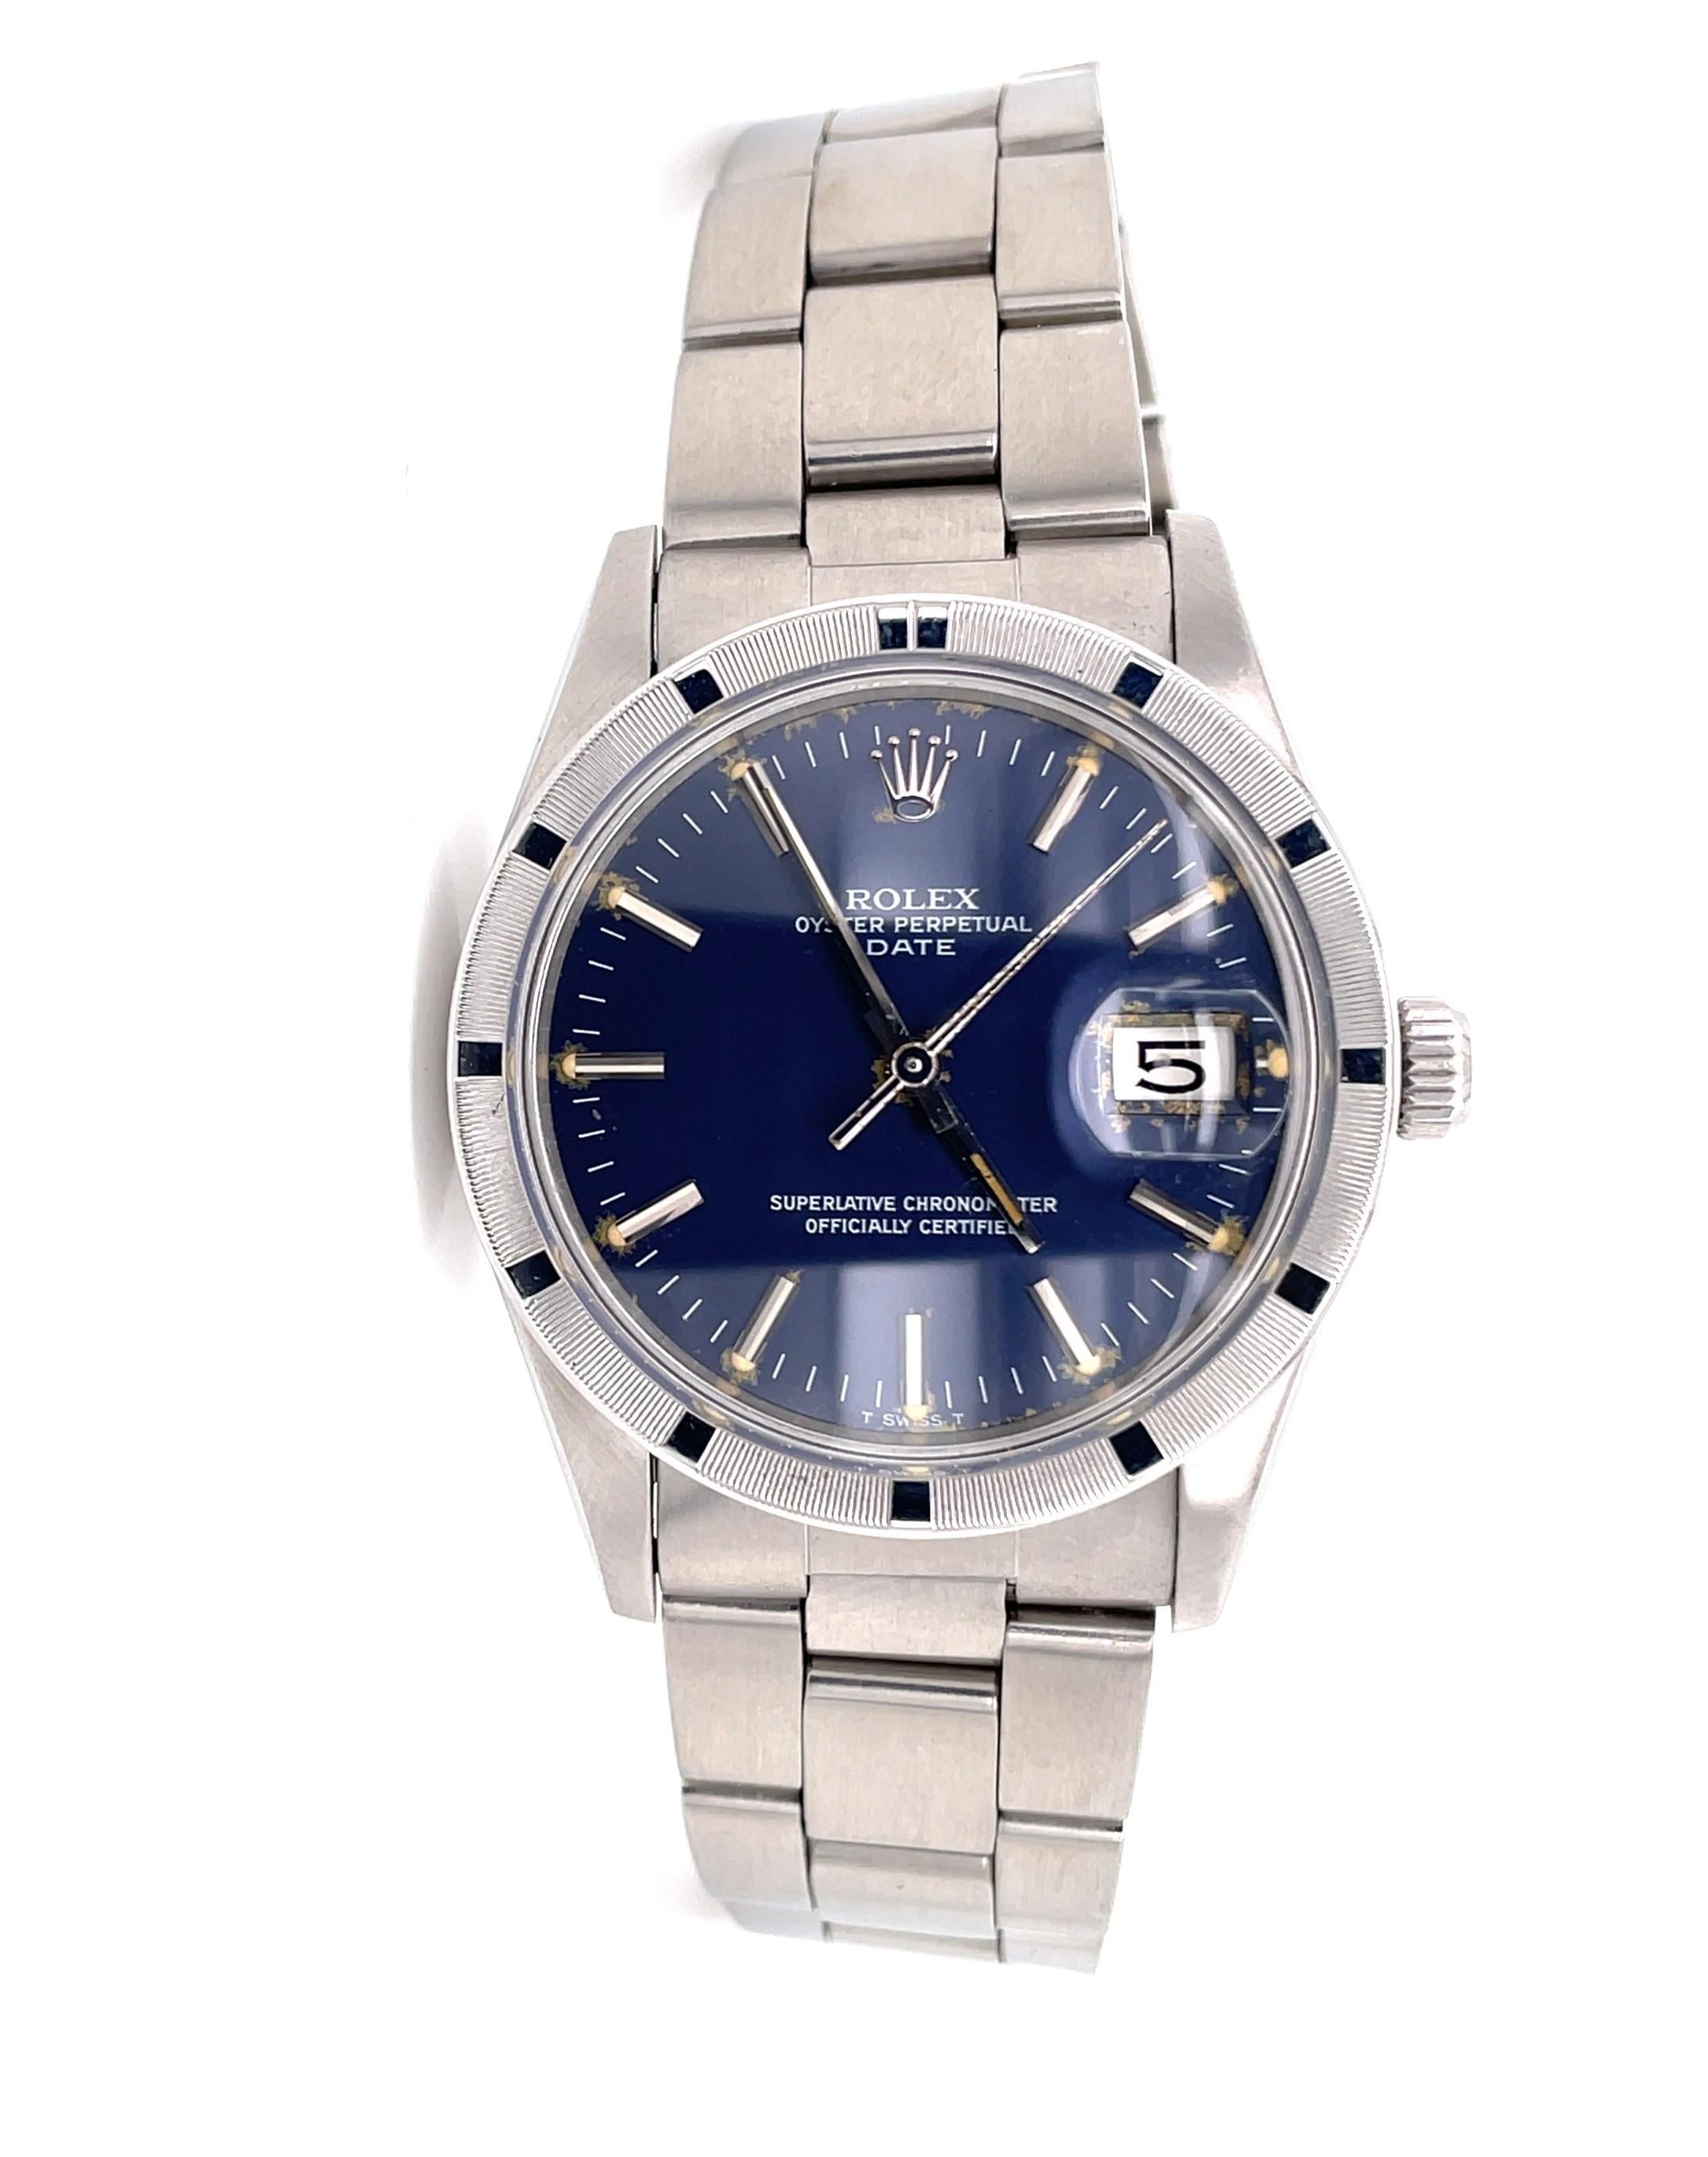 Beliebte Rolex Herrenarmbanduhr Modell 15010 mit 33mm Stahlgehäuse und Edelstahl Oyster-Armband.
Dieser Chronometer ist eine Uhr mit ewigem Datum und verfügt über ein fabrikneues 15010 Rolex Automatikwerk und ein neues Glas.  Ein klassisches